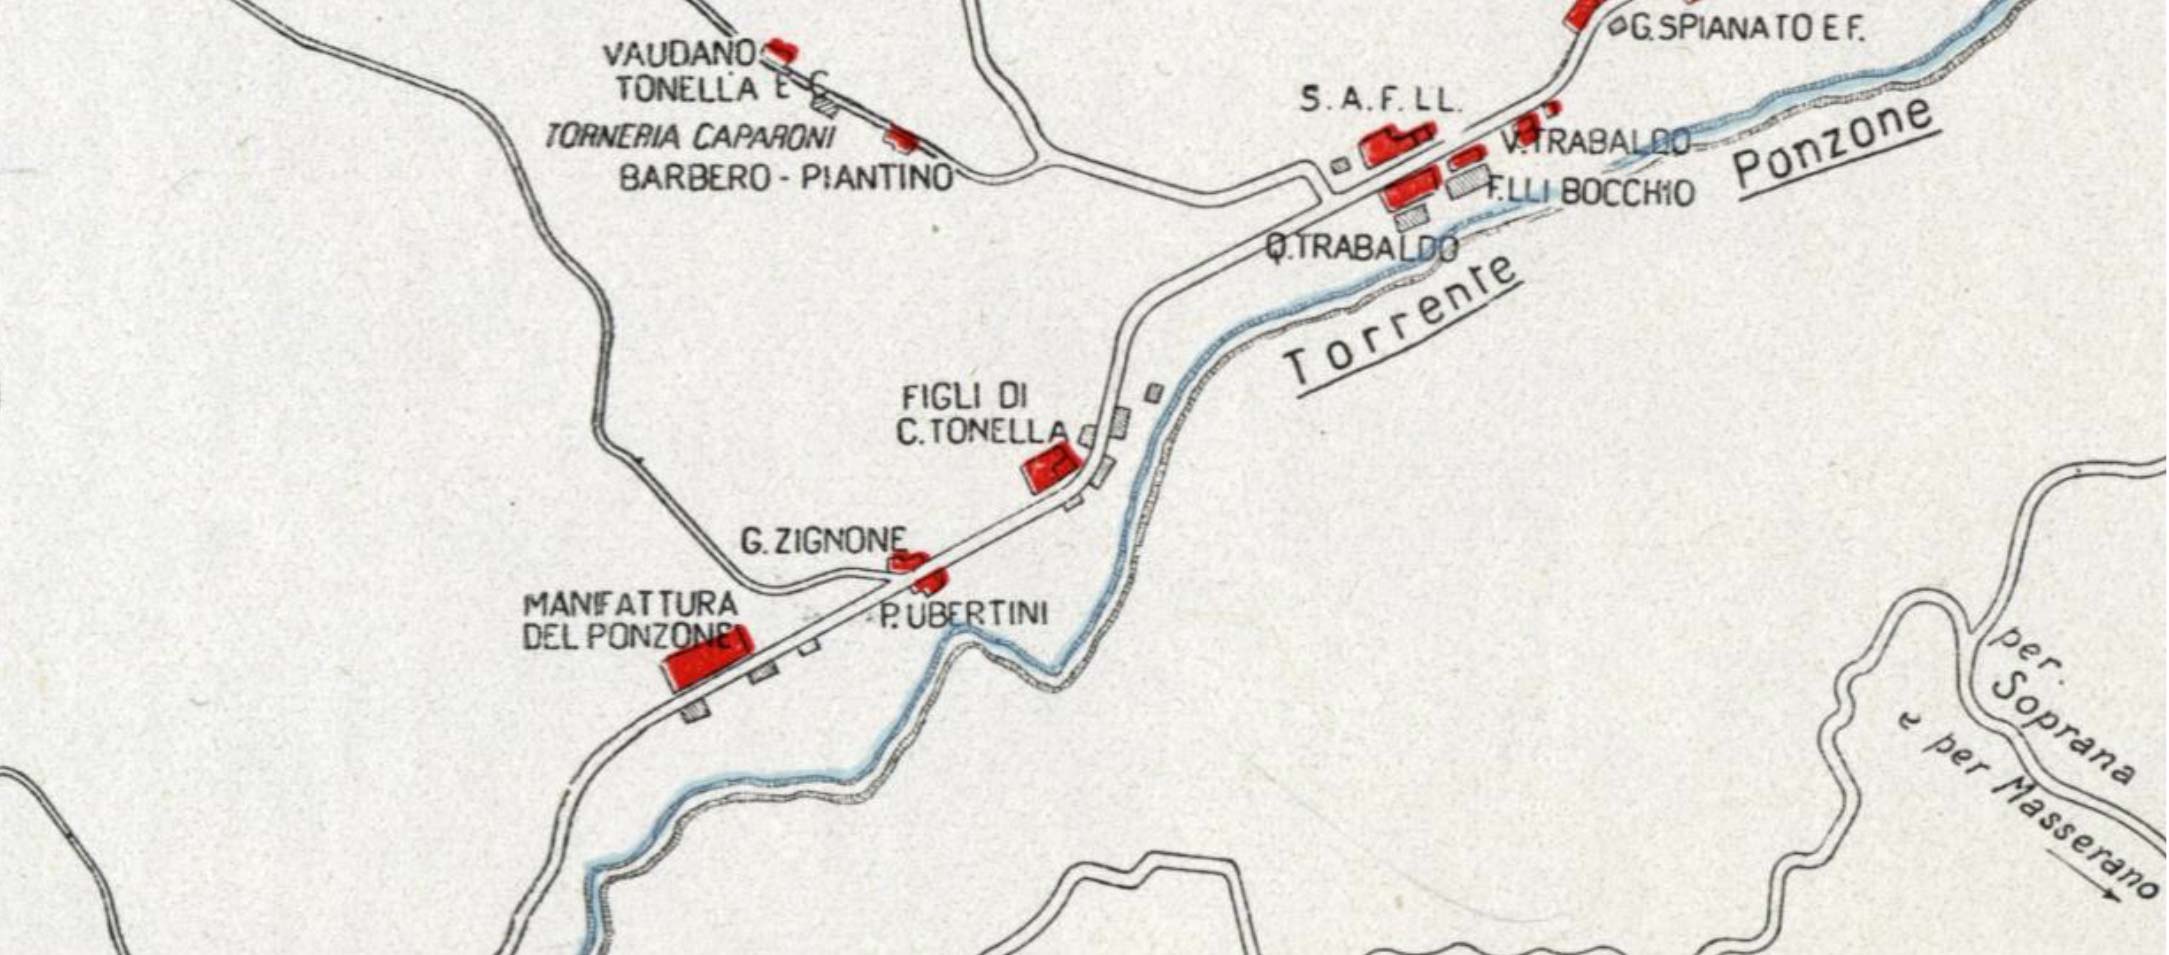 폰초네 개울 근처 공장의 지도를 보여주는 사진. 1934년 에서 발췌.